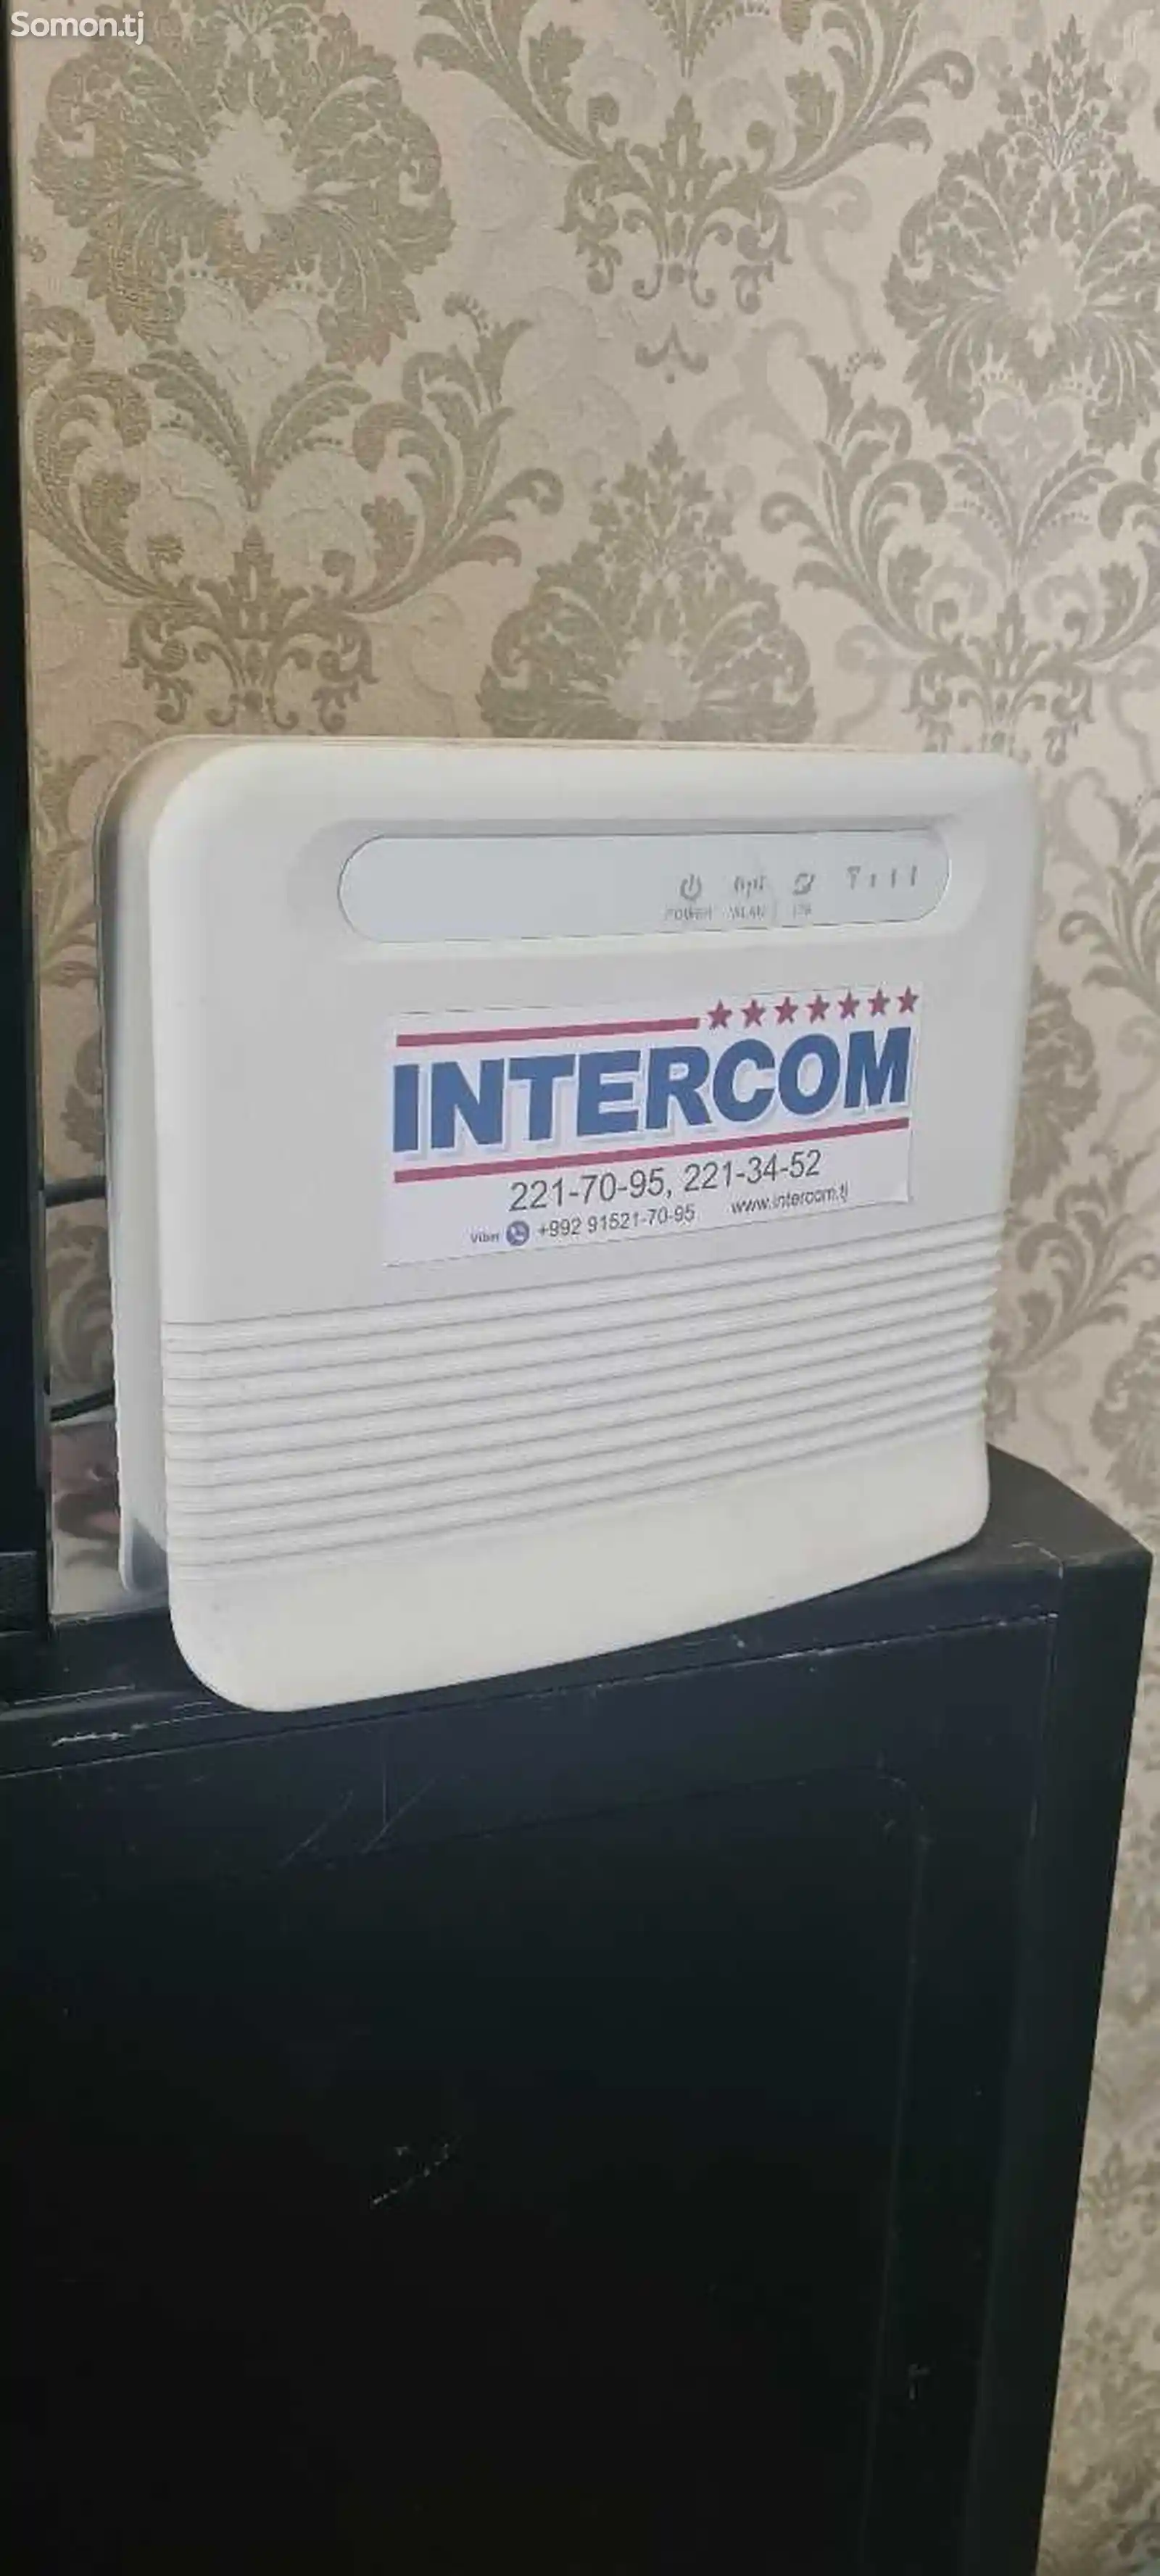 intercom wimax